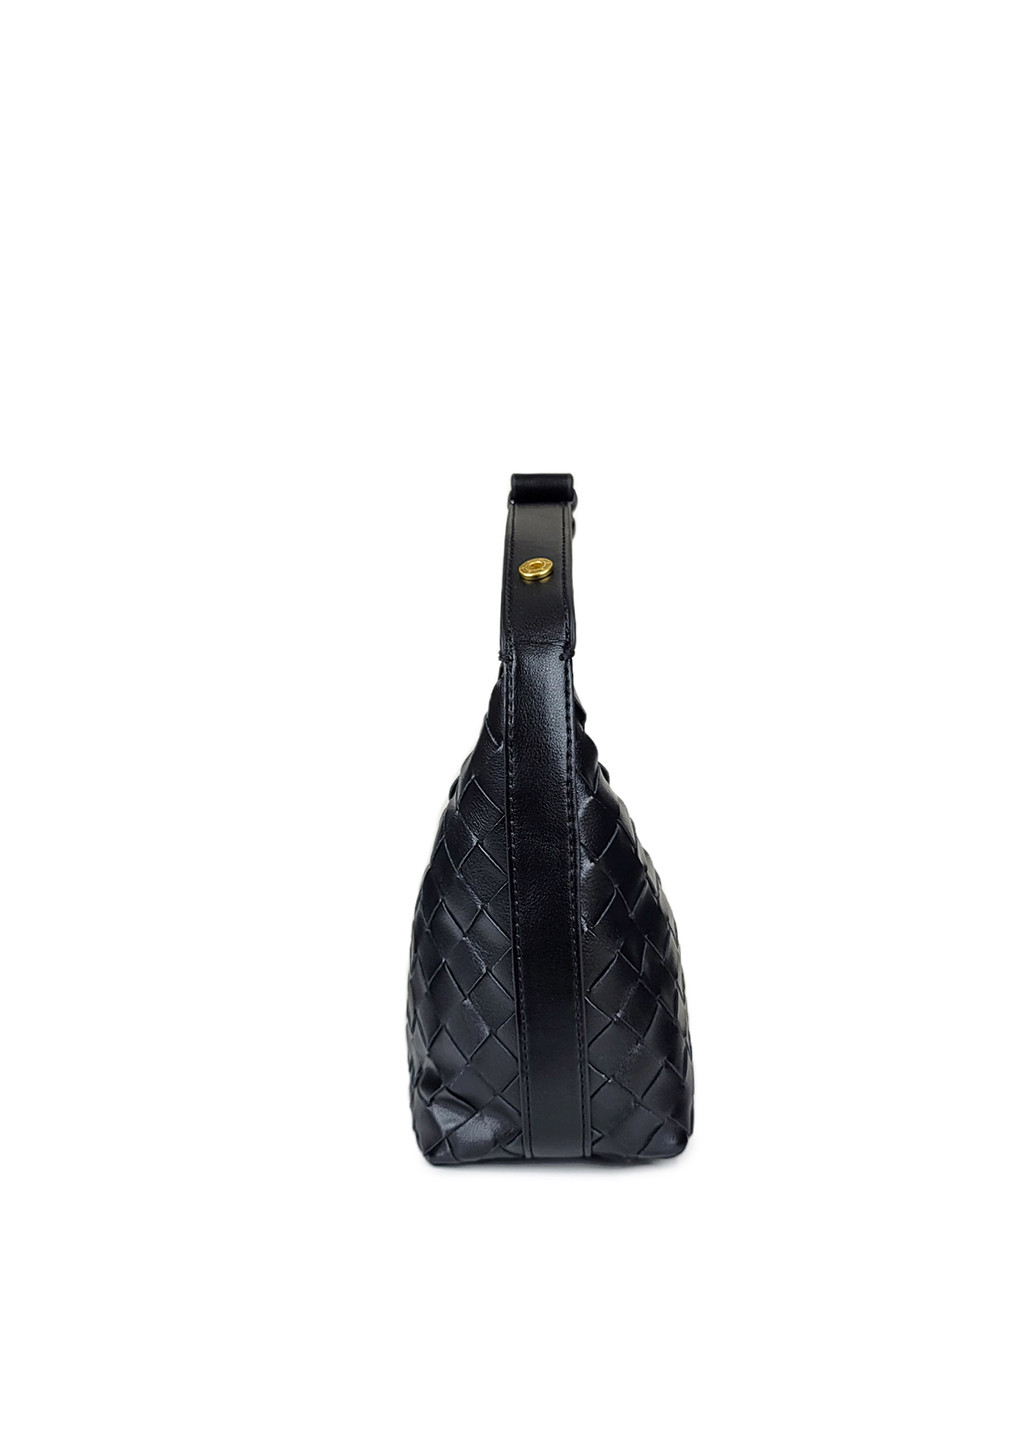 Шкіряна сумка хобо чорна плетена, 9752 чорн, Fashion (267404190)